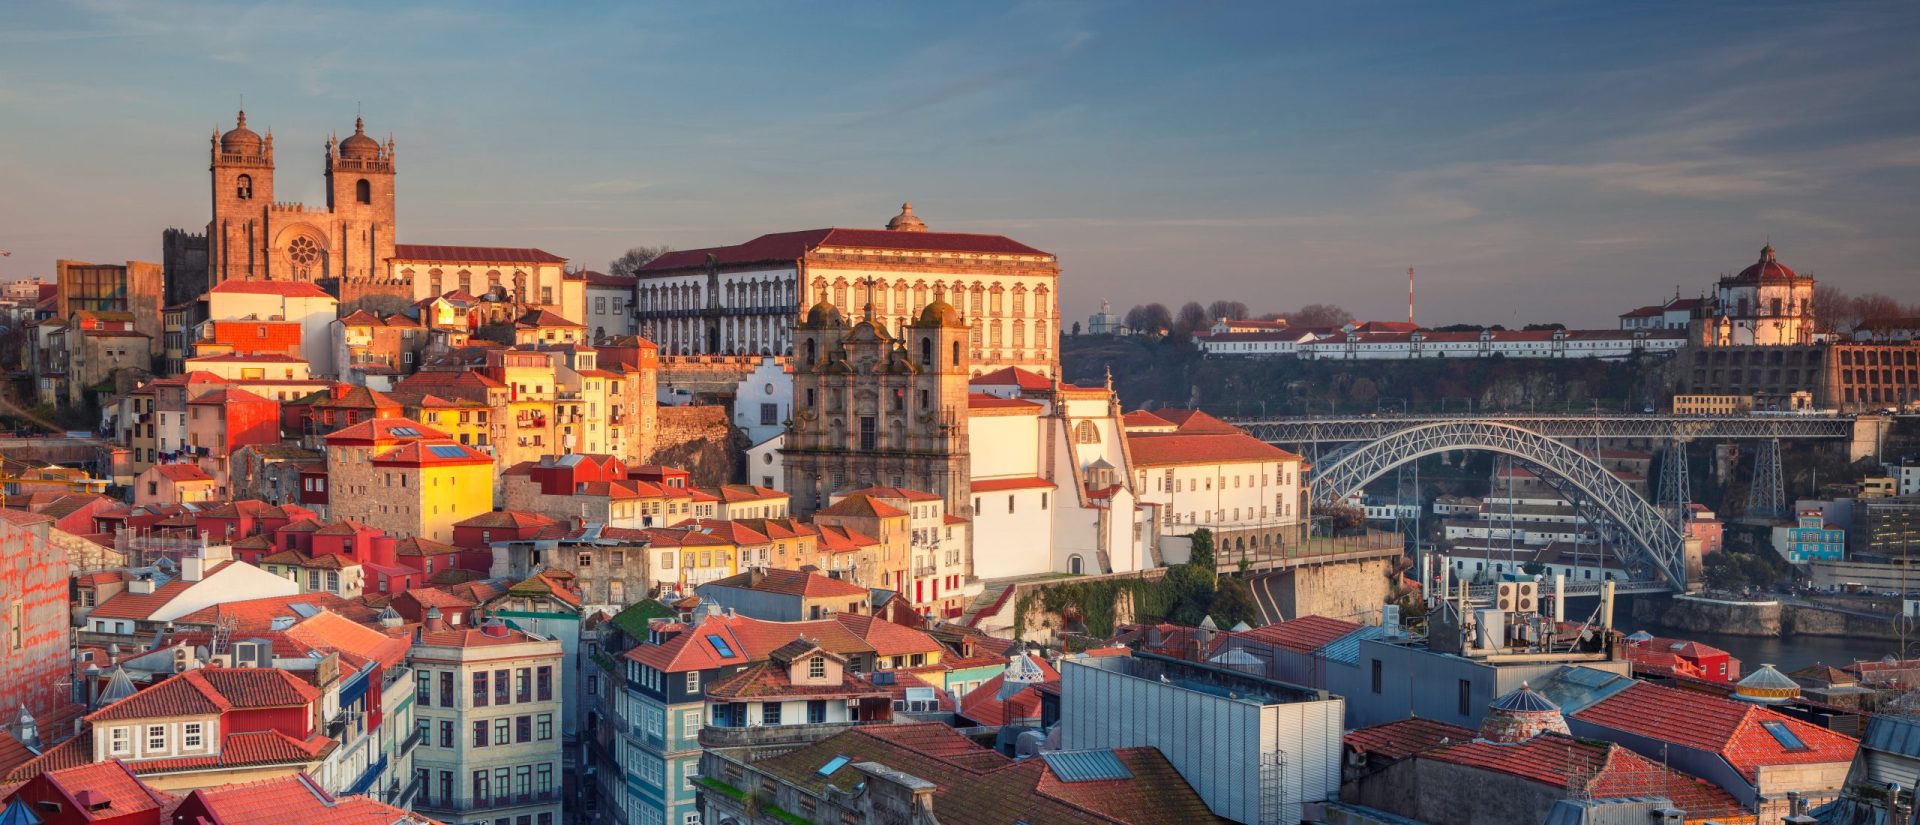 Hotéis e alojamentos locais no Porto estão a disponibilizar quartos para profissionais de saúde